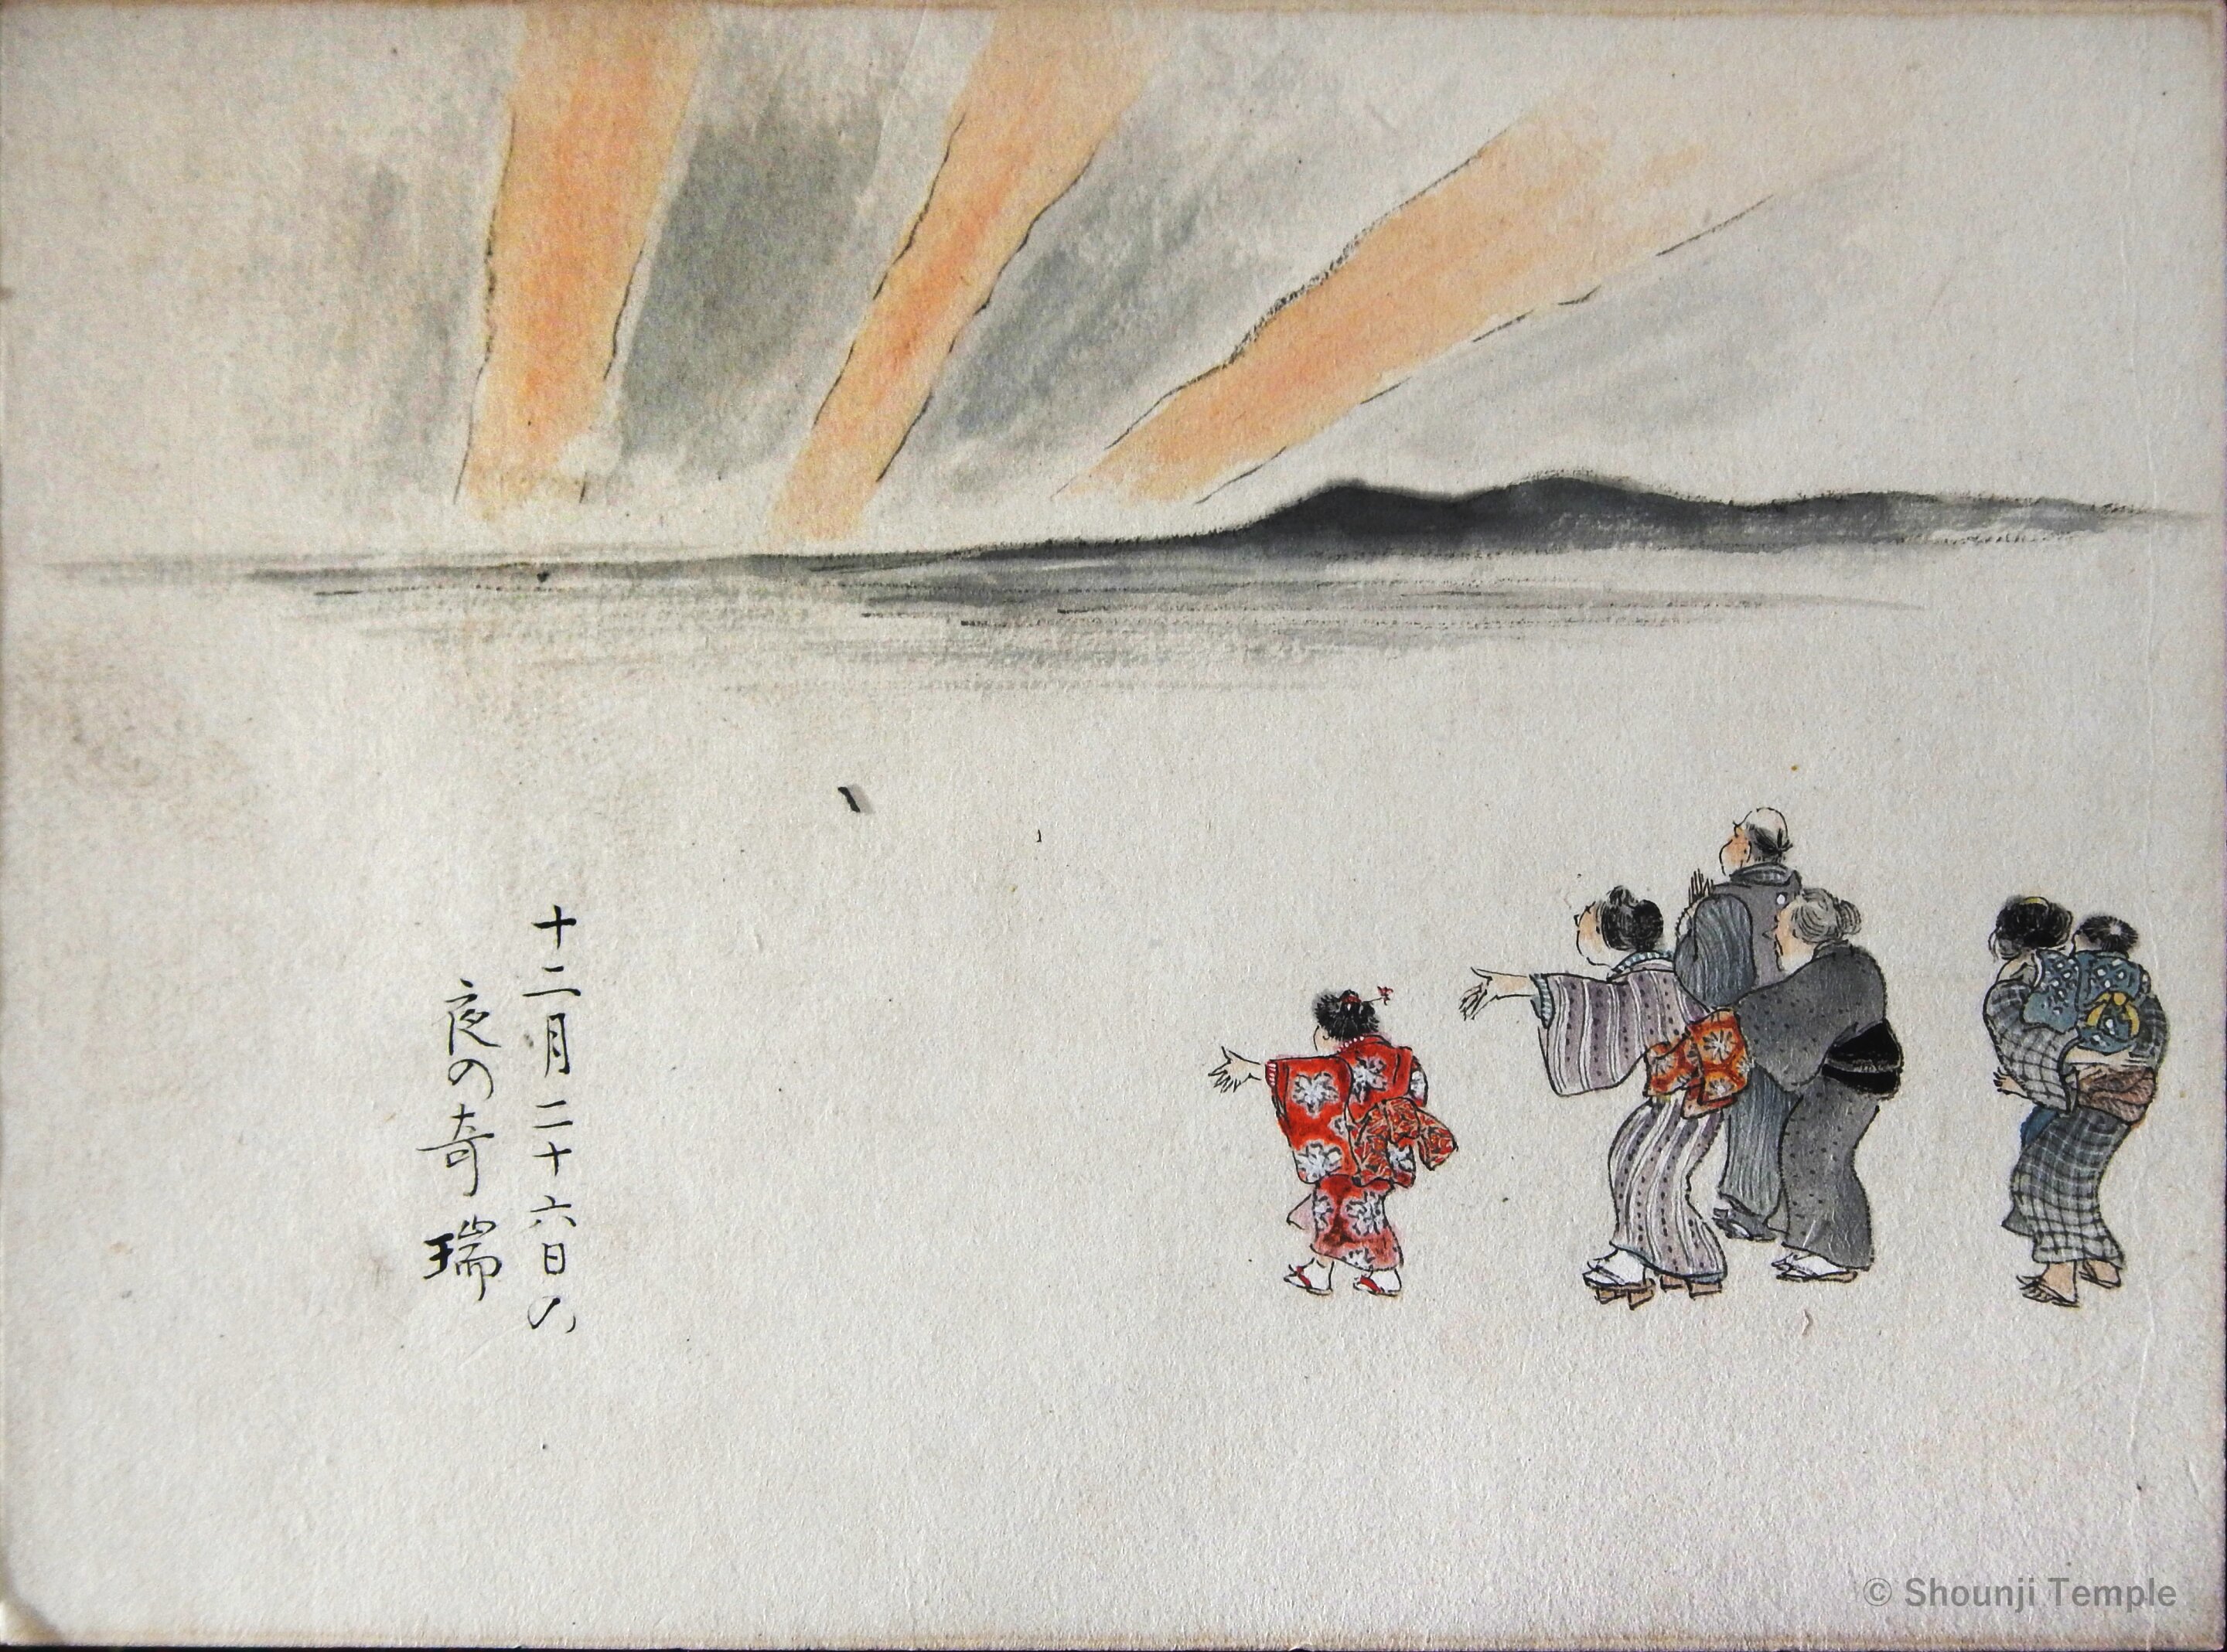 Dibujo de una aurora japonesa observada en Okazaki el 4 de febrero de 1872, reproducido por cortesía del Templo Shounji (contraste mejorado). Crédito: ©︎ Templo Shounji